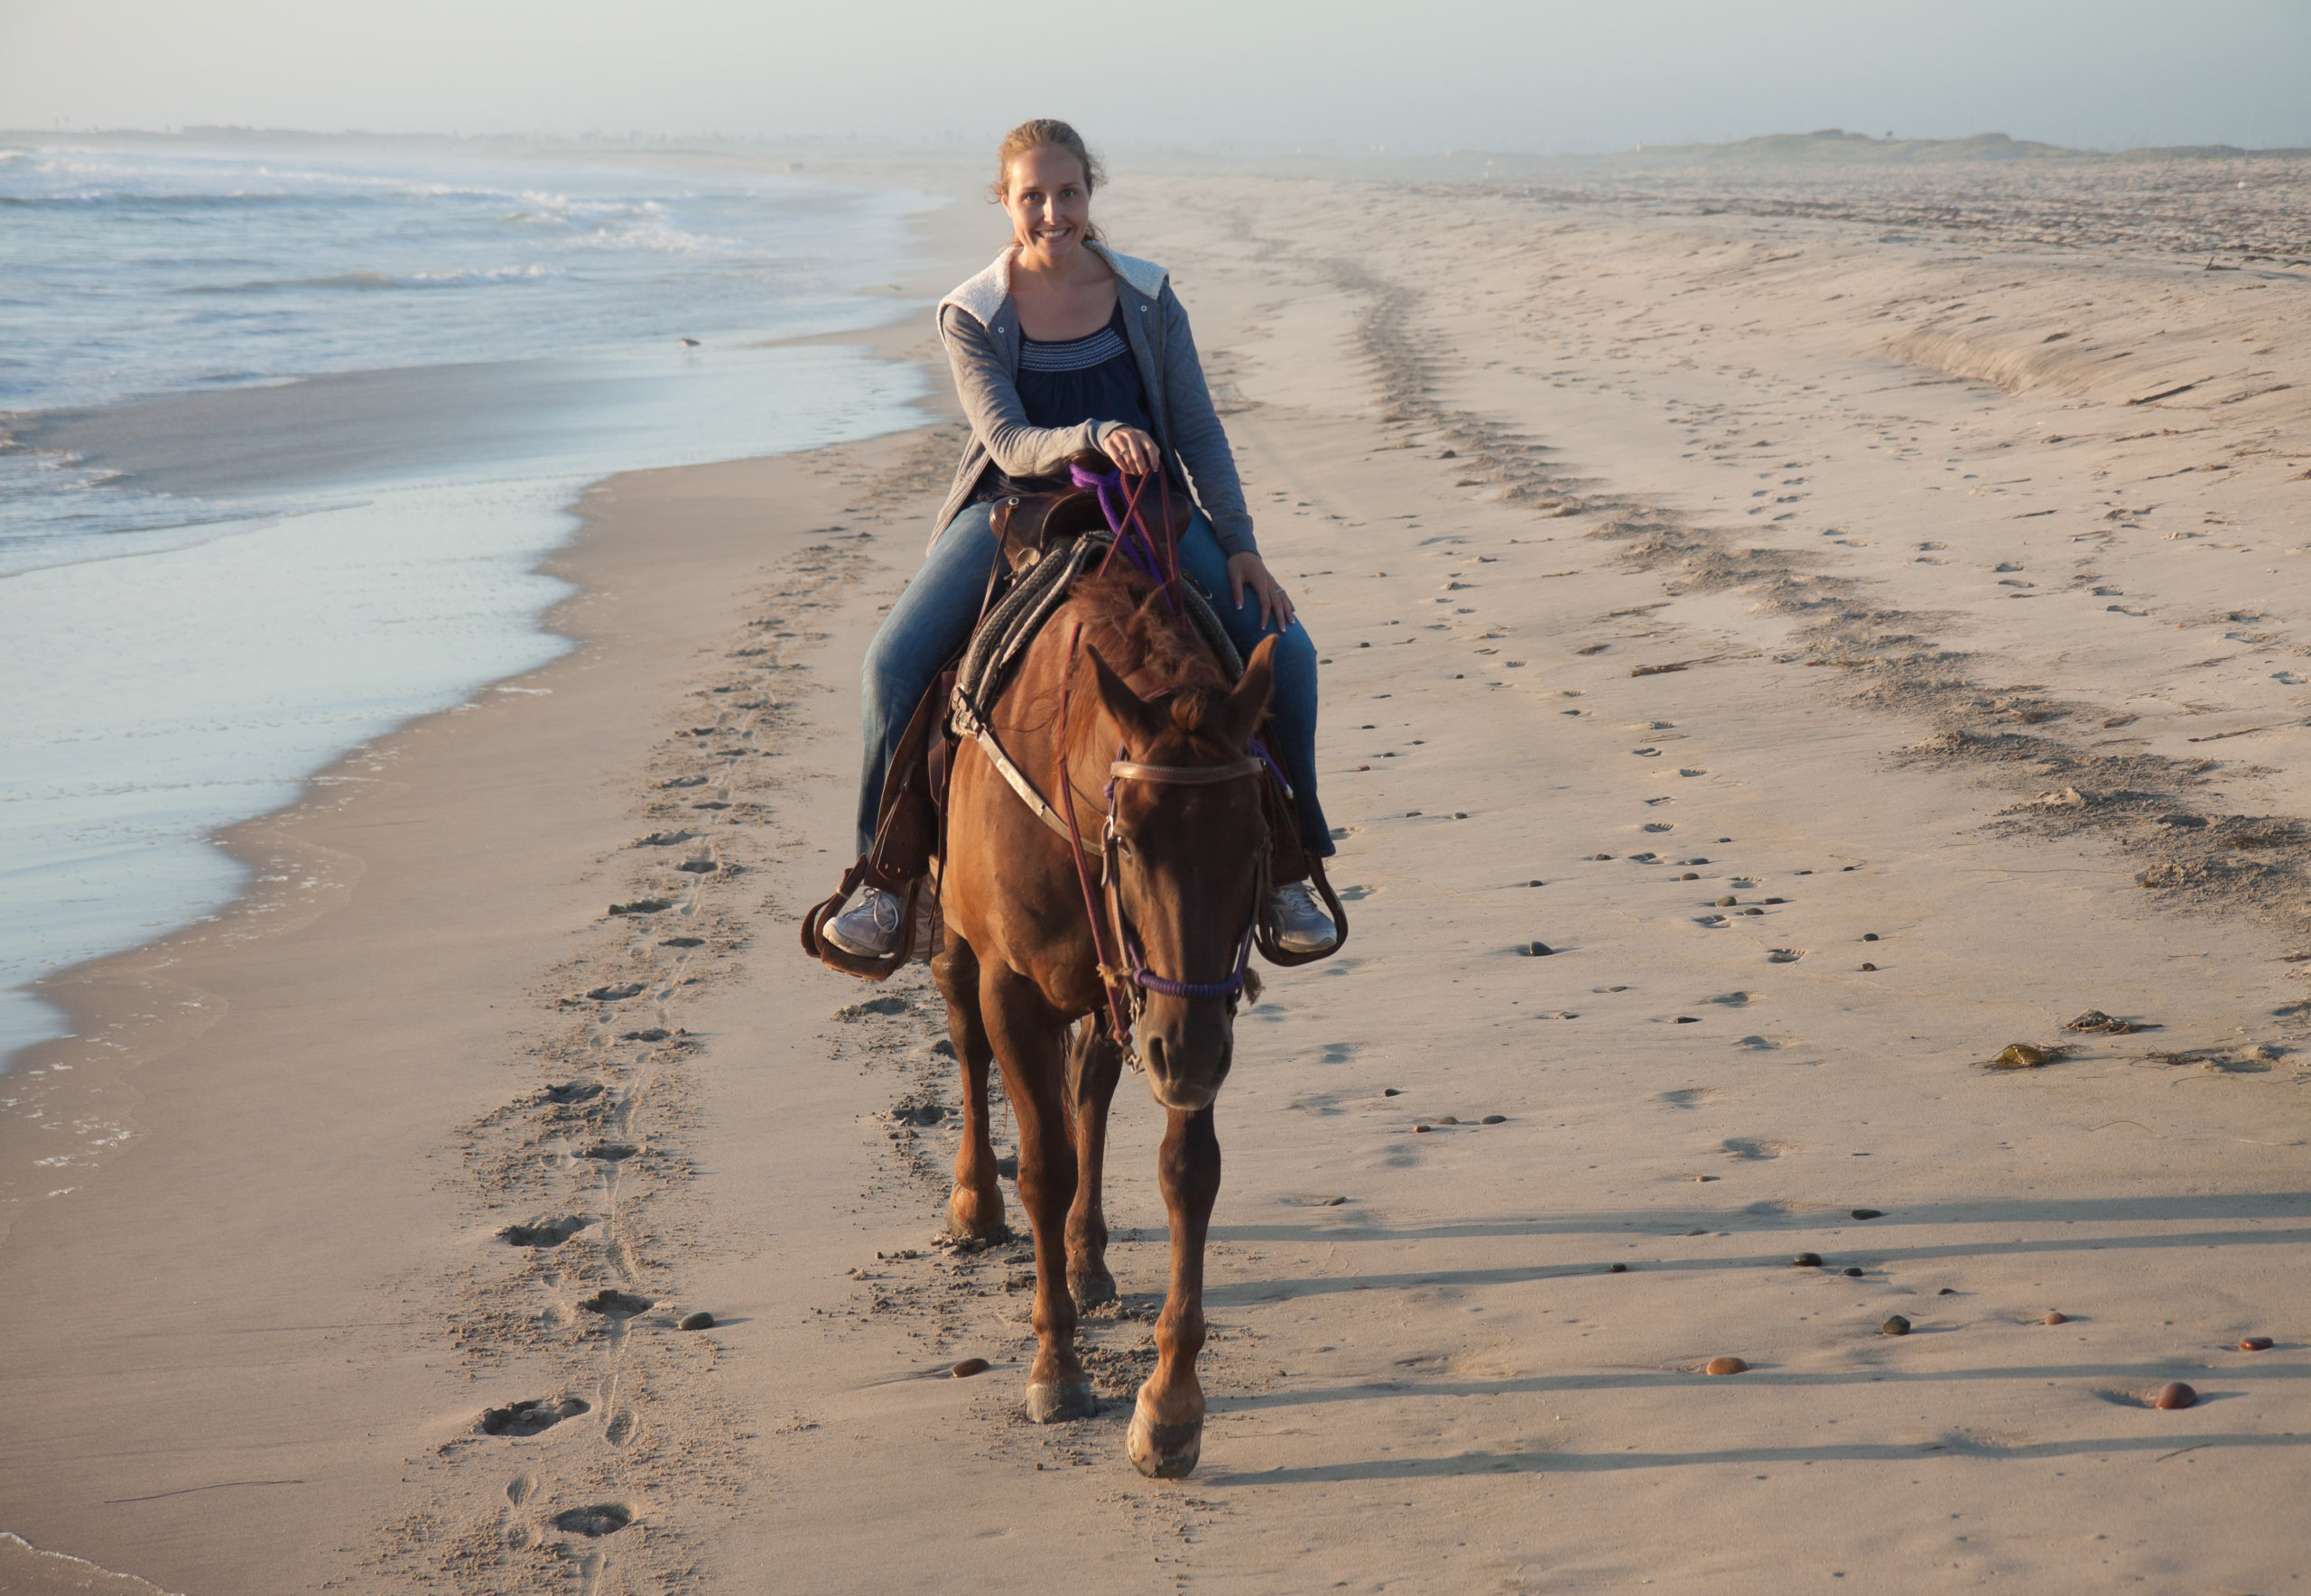 Go horseback riding on the beach in Montauk